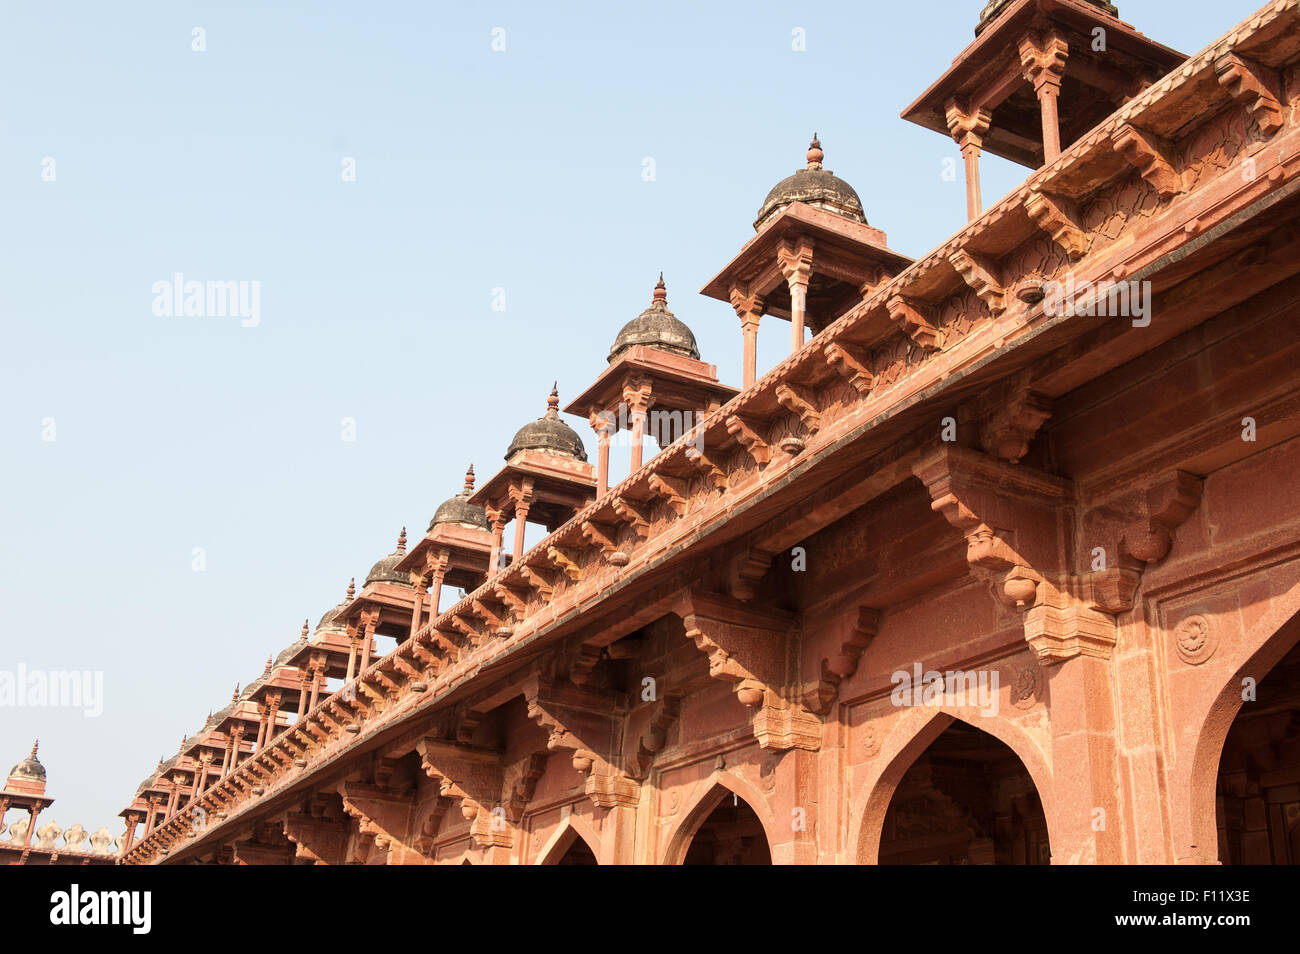 Fatehpur Sikri, Uttar Pradesh. La ville perdue de Fatehpur Sikri construit par l'empereur Akbar 16e siècle, abandonné 12 ans plus tard en raison d'un manque d'approvisionnement en eau. Détail du toit. Banque D'Images